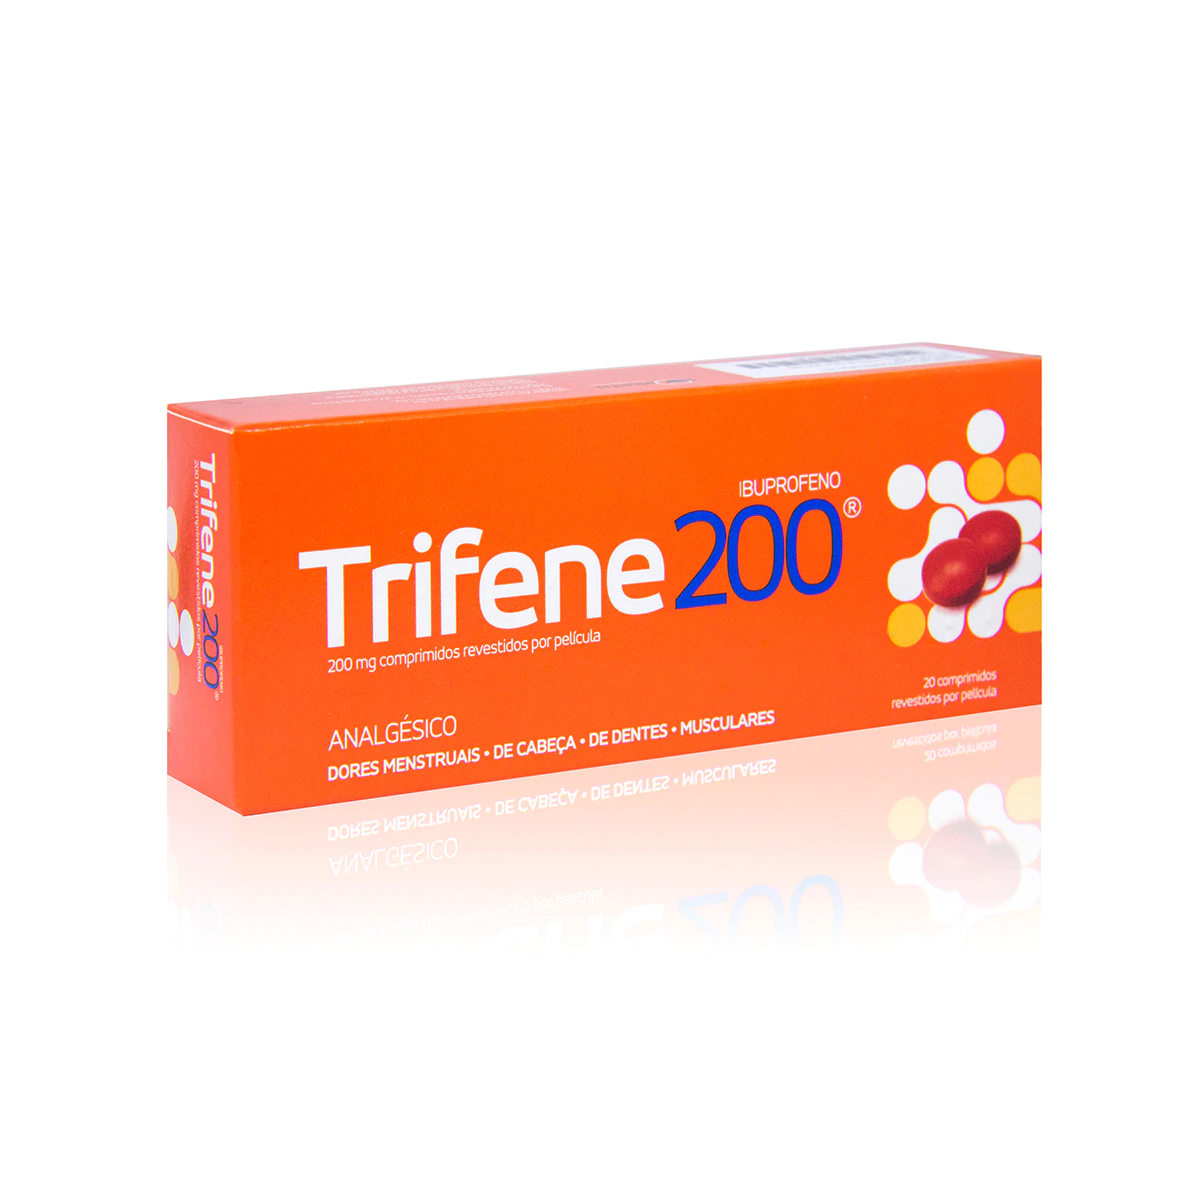 Trifene 200 - image 0